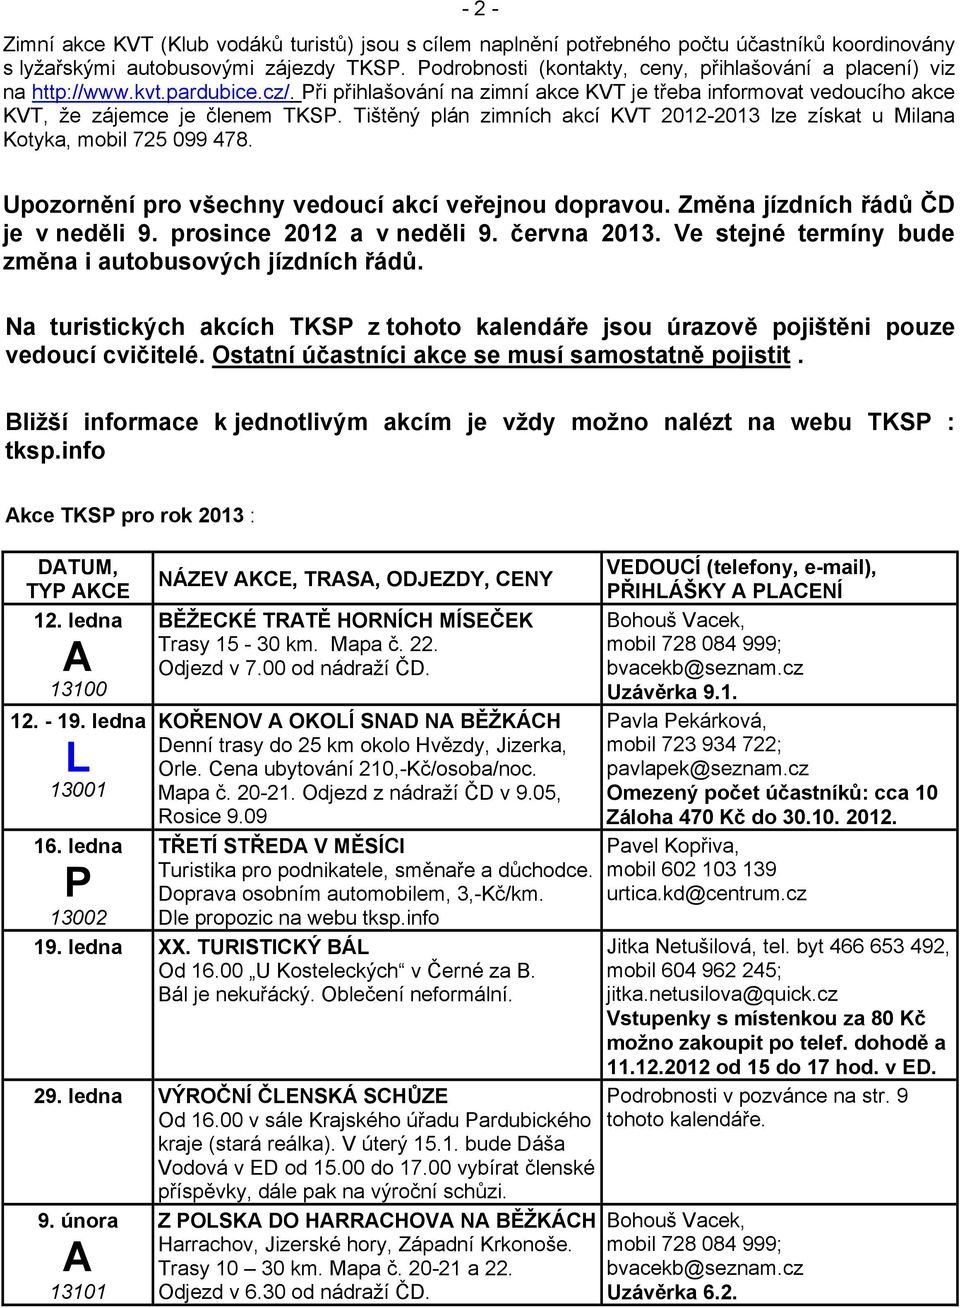 Tištěný plán zimních akcí KVT 2012-2013 lze získat u Milana Kotyka, mobil 725 099 478. Upozornění pro všechny vedoucí akcí veřejnou dopravou. Změna jízdních řádů ČD je v neděli 9.